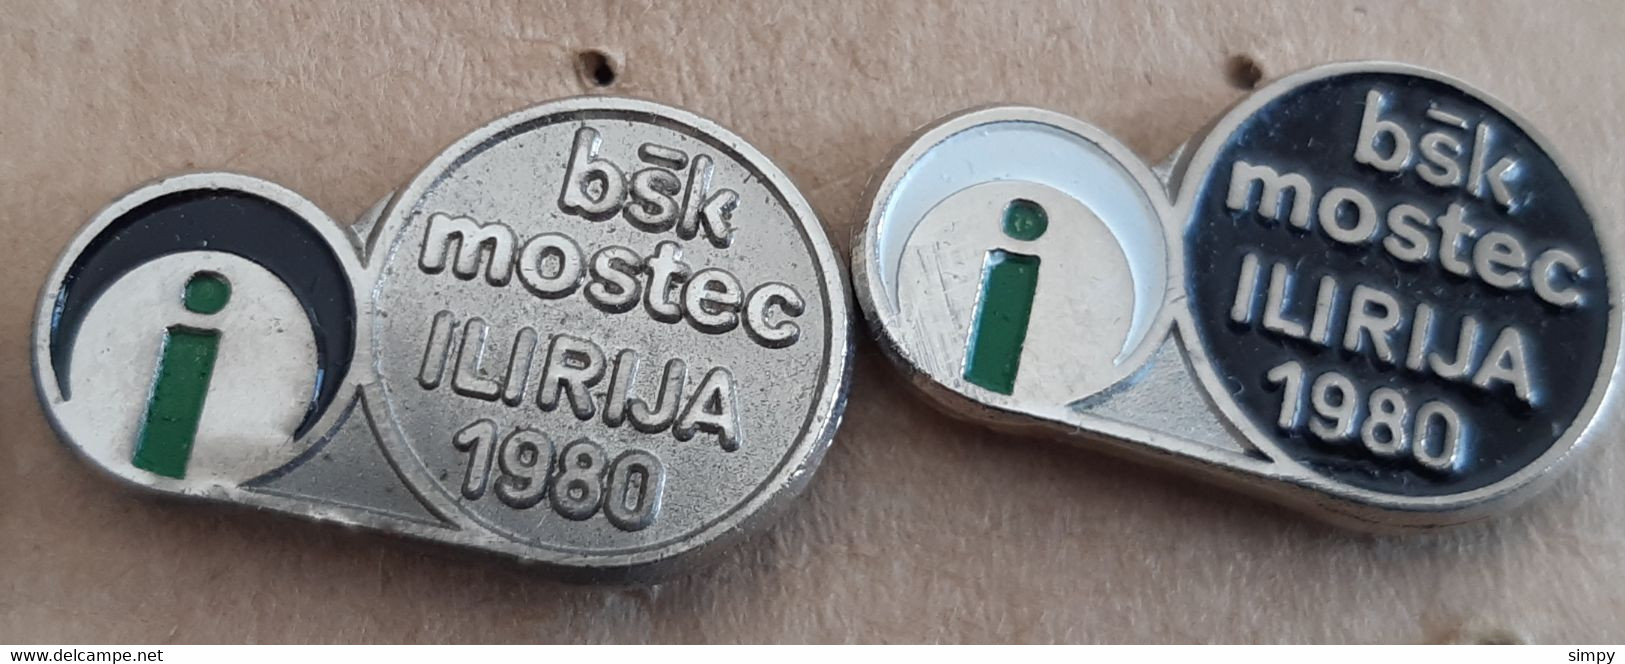 Petanque Bowls Club BSK Ilirija Mostec 1980 Slovenia Ex Yugoslavia Pins - Pétanque